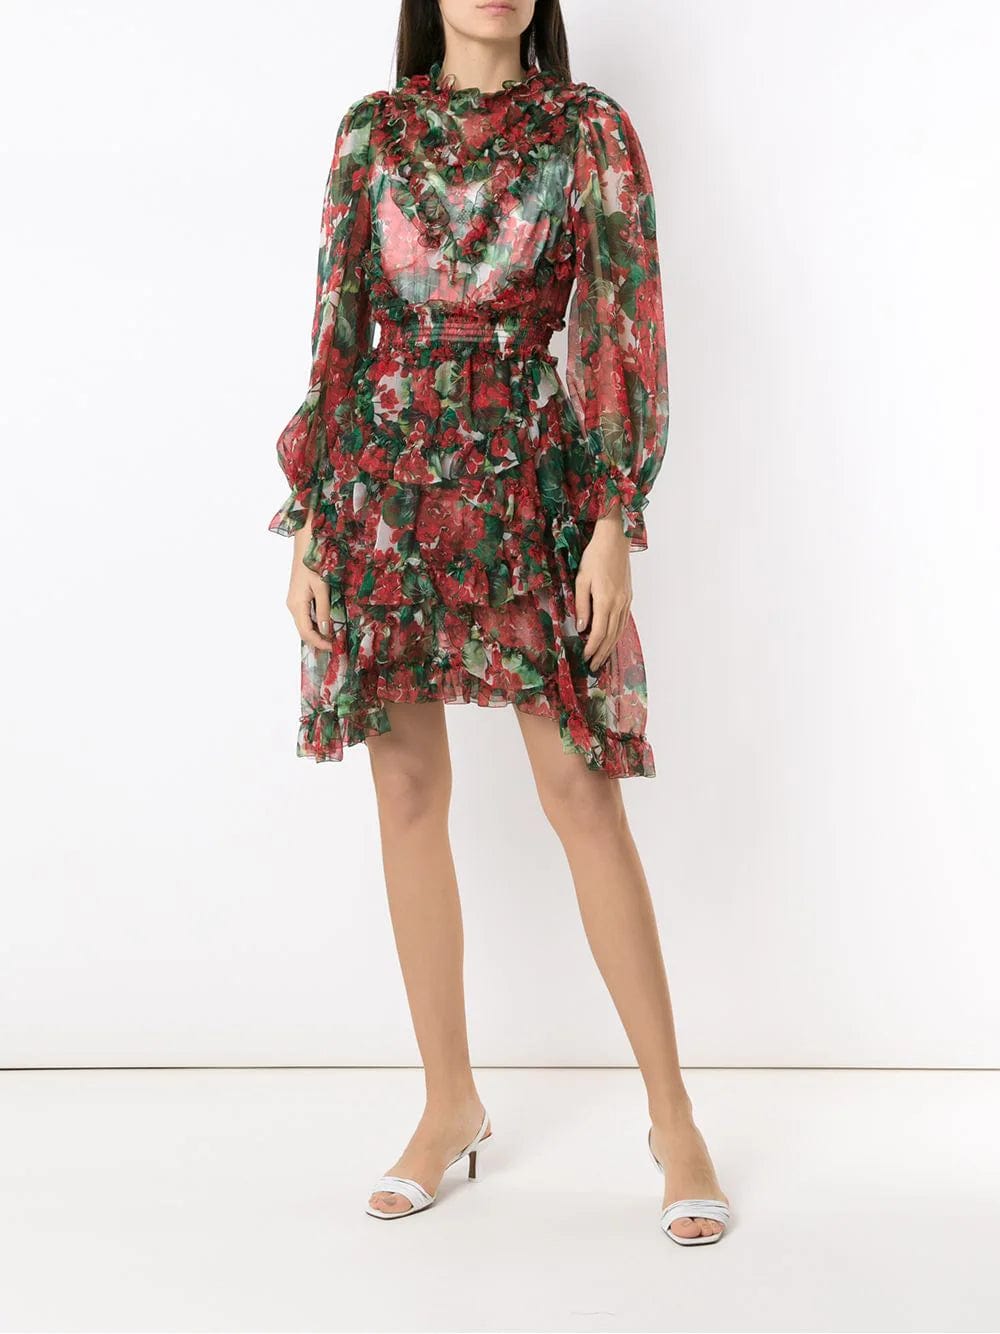 Dolce & Gabbana Hydrangea Ruffled Sheer Dress